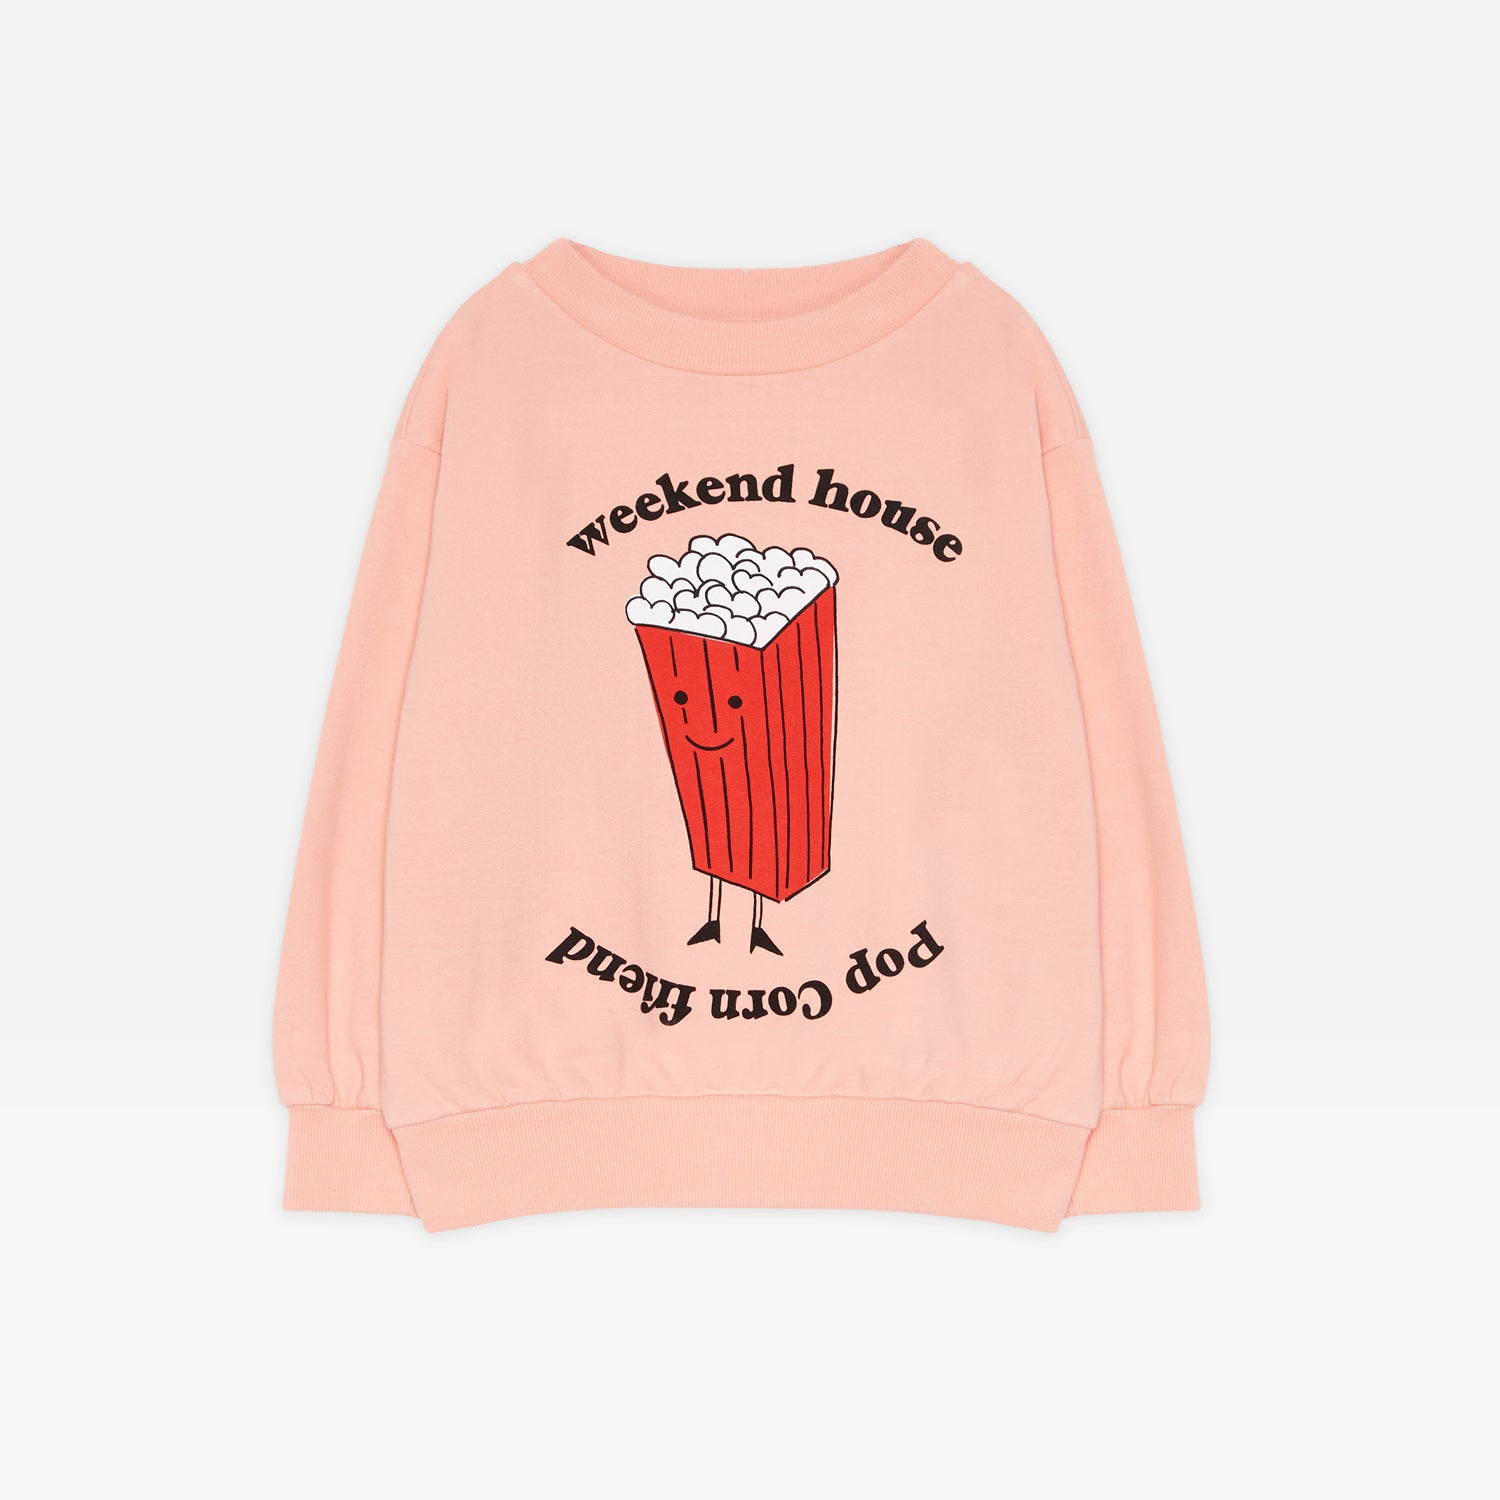 Boys & Girls Pink Printed Cotton Sweatshirt